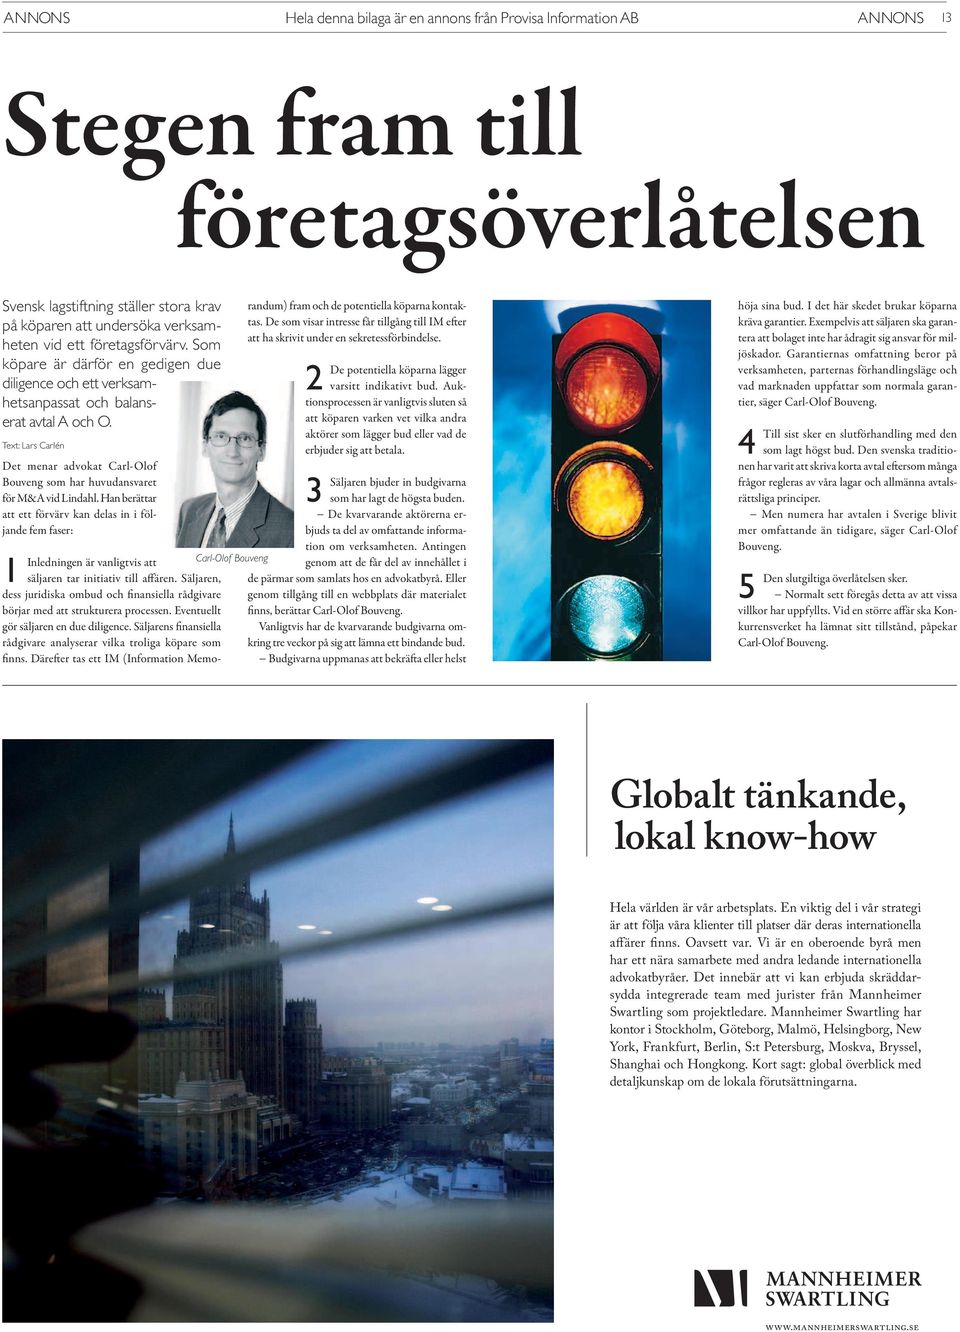 Text: Lars Carlén Det menar advokat Carl-Olof Bouveng som har huvudansvaret för M&A vid Lindahl.